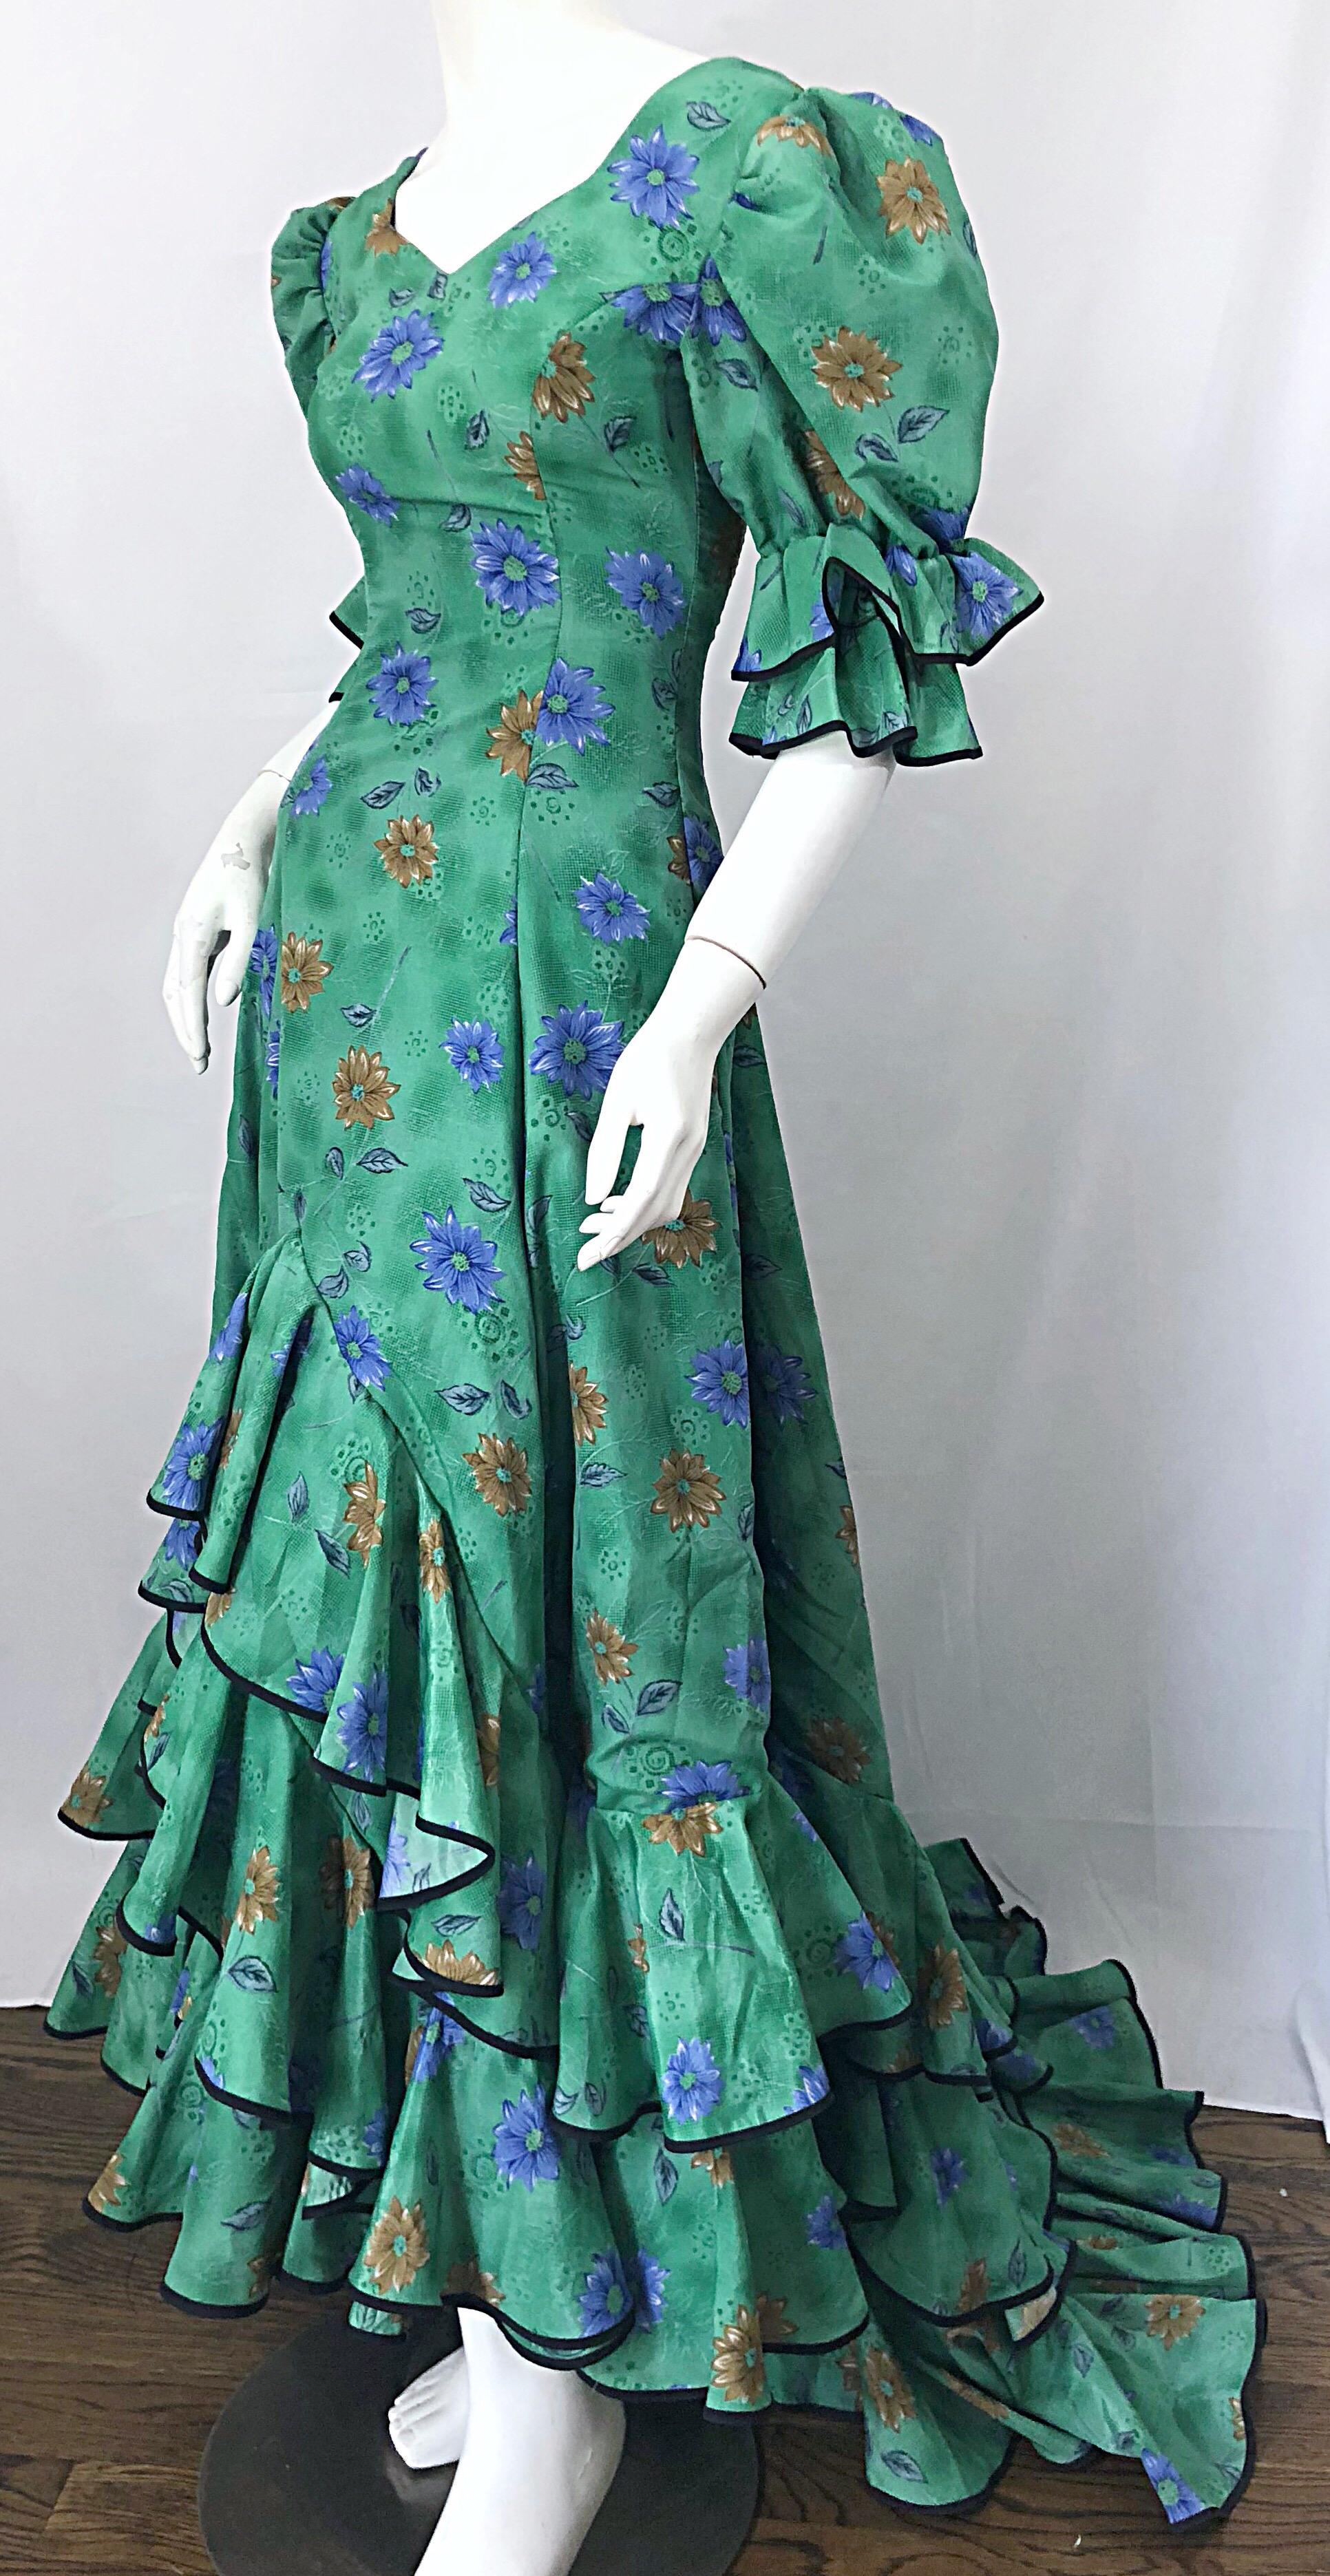 1800s inspired dresses